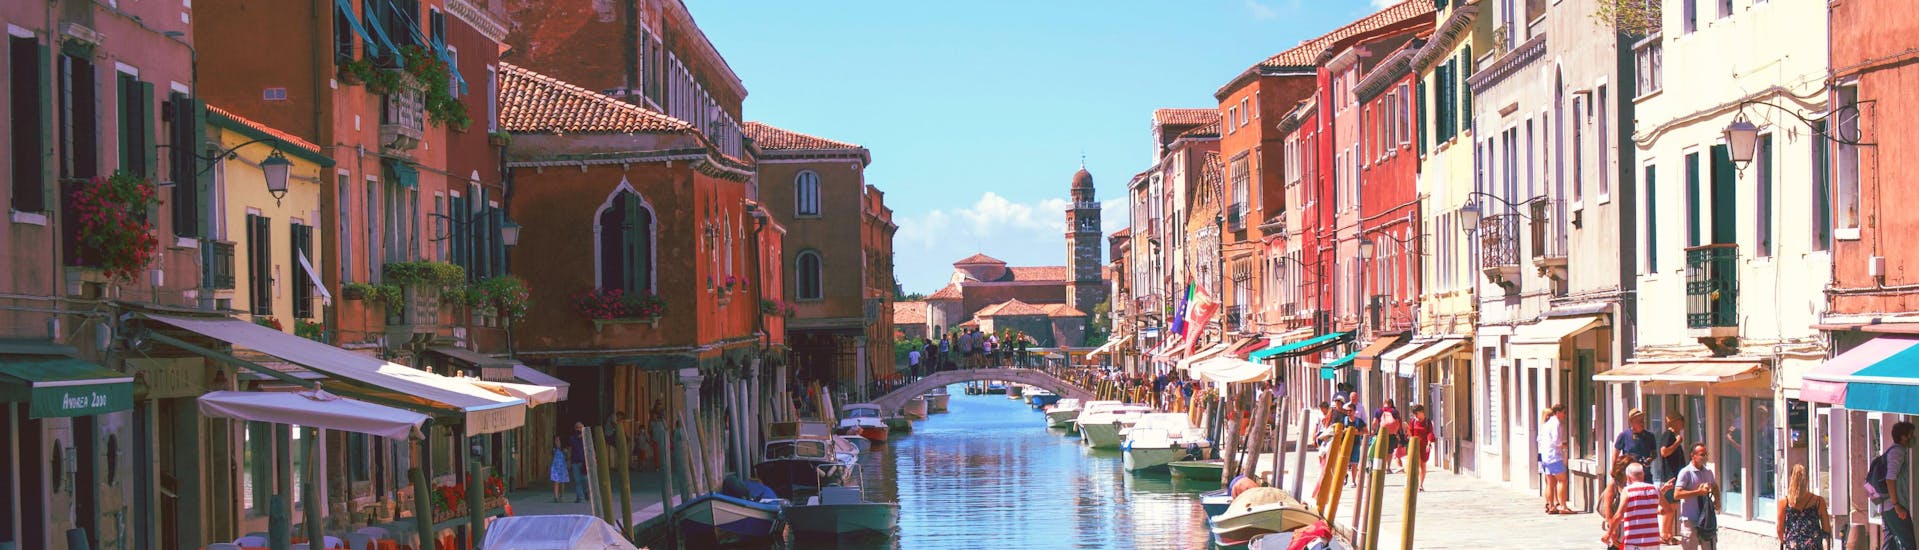 Vista de Burano, una pequeña isla cerca de Venecia a la que se puede llegar con un paseo en barco.